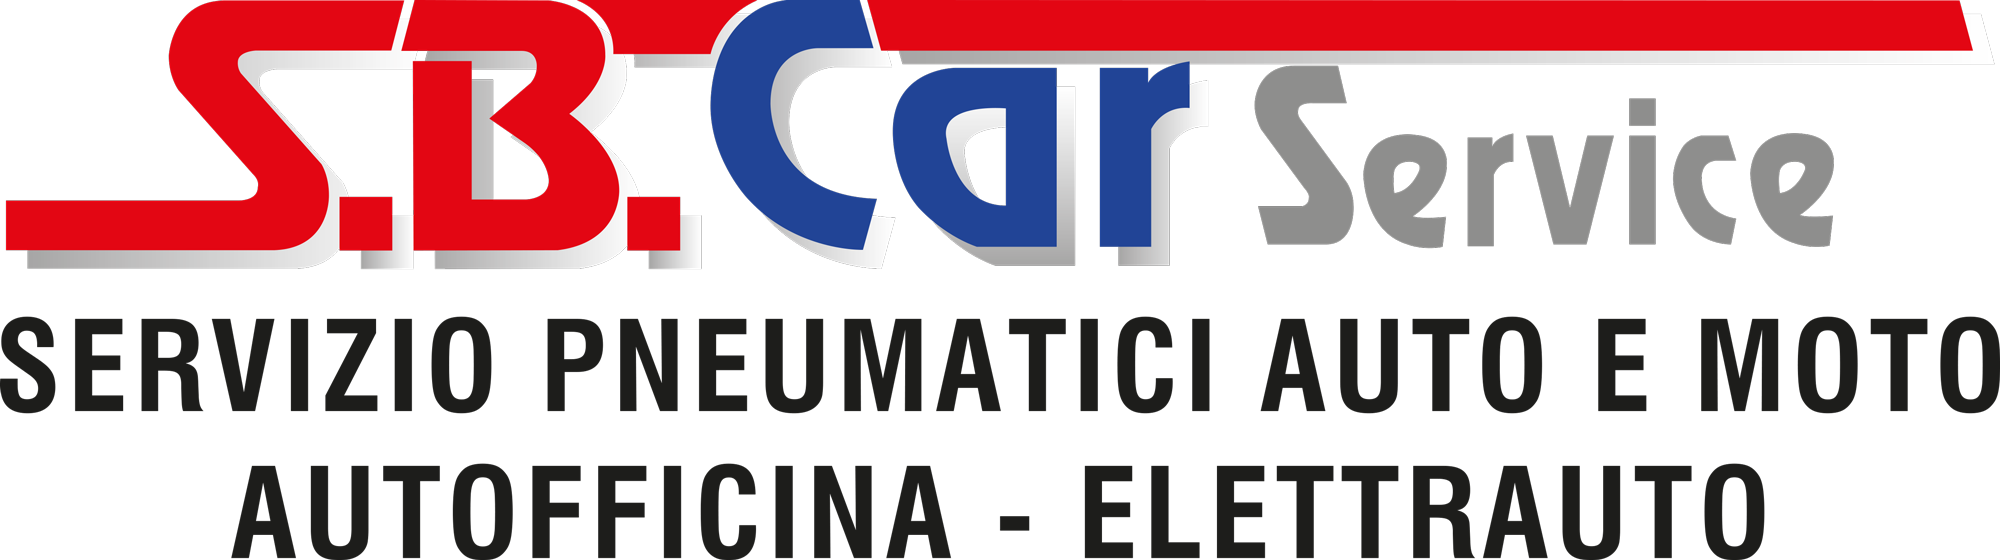 Autofficina Elettrauto | Vigodarzere (PD) | SB Car Service